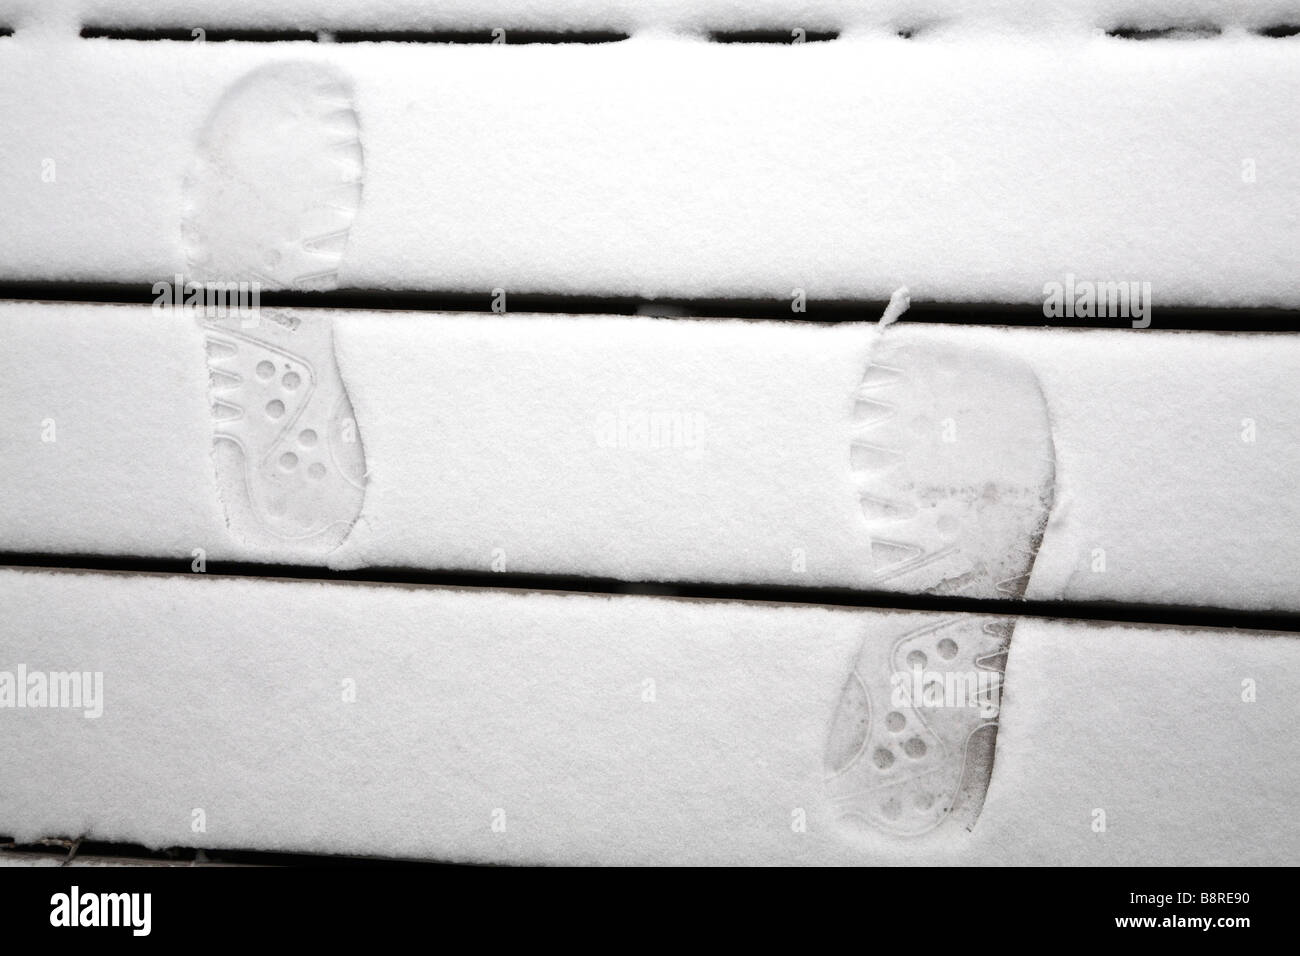 Orme nella neve sui gradini in legno. Foto Stock